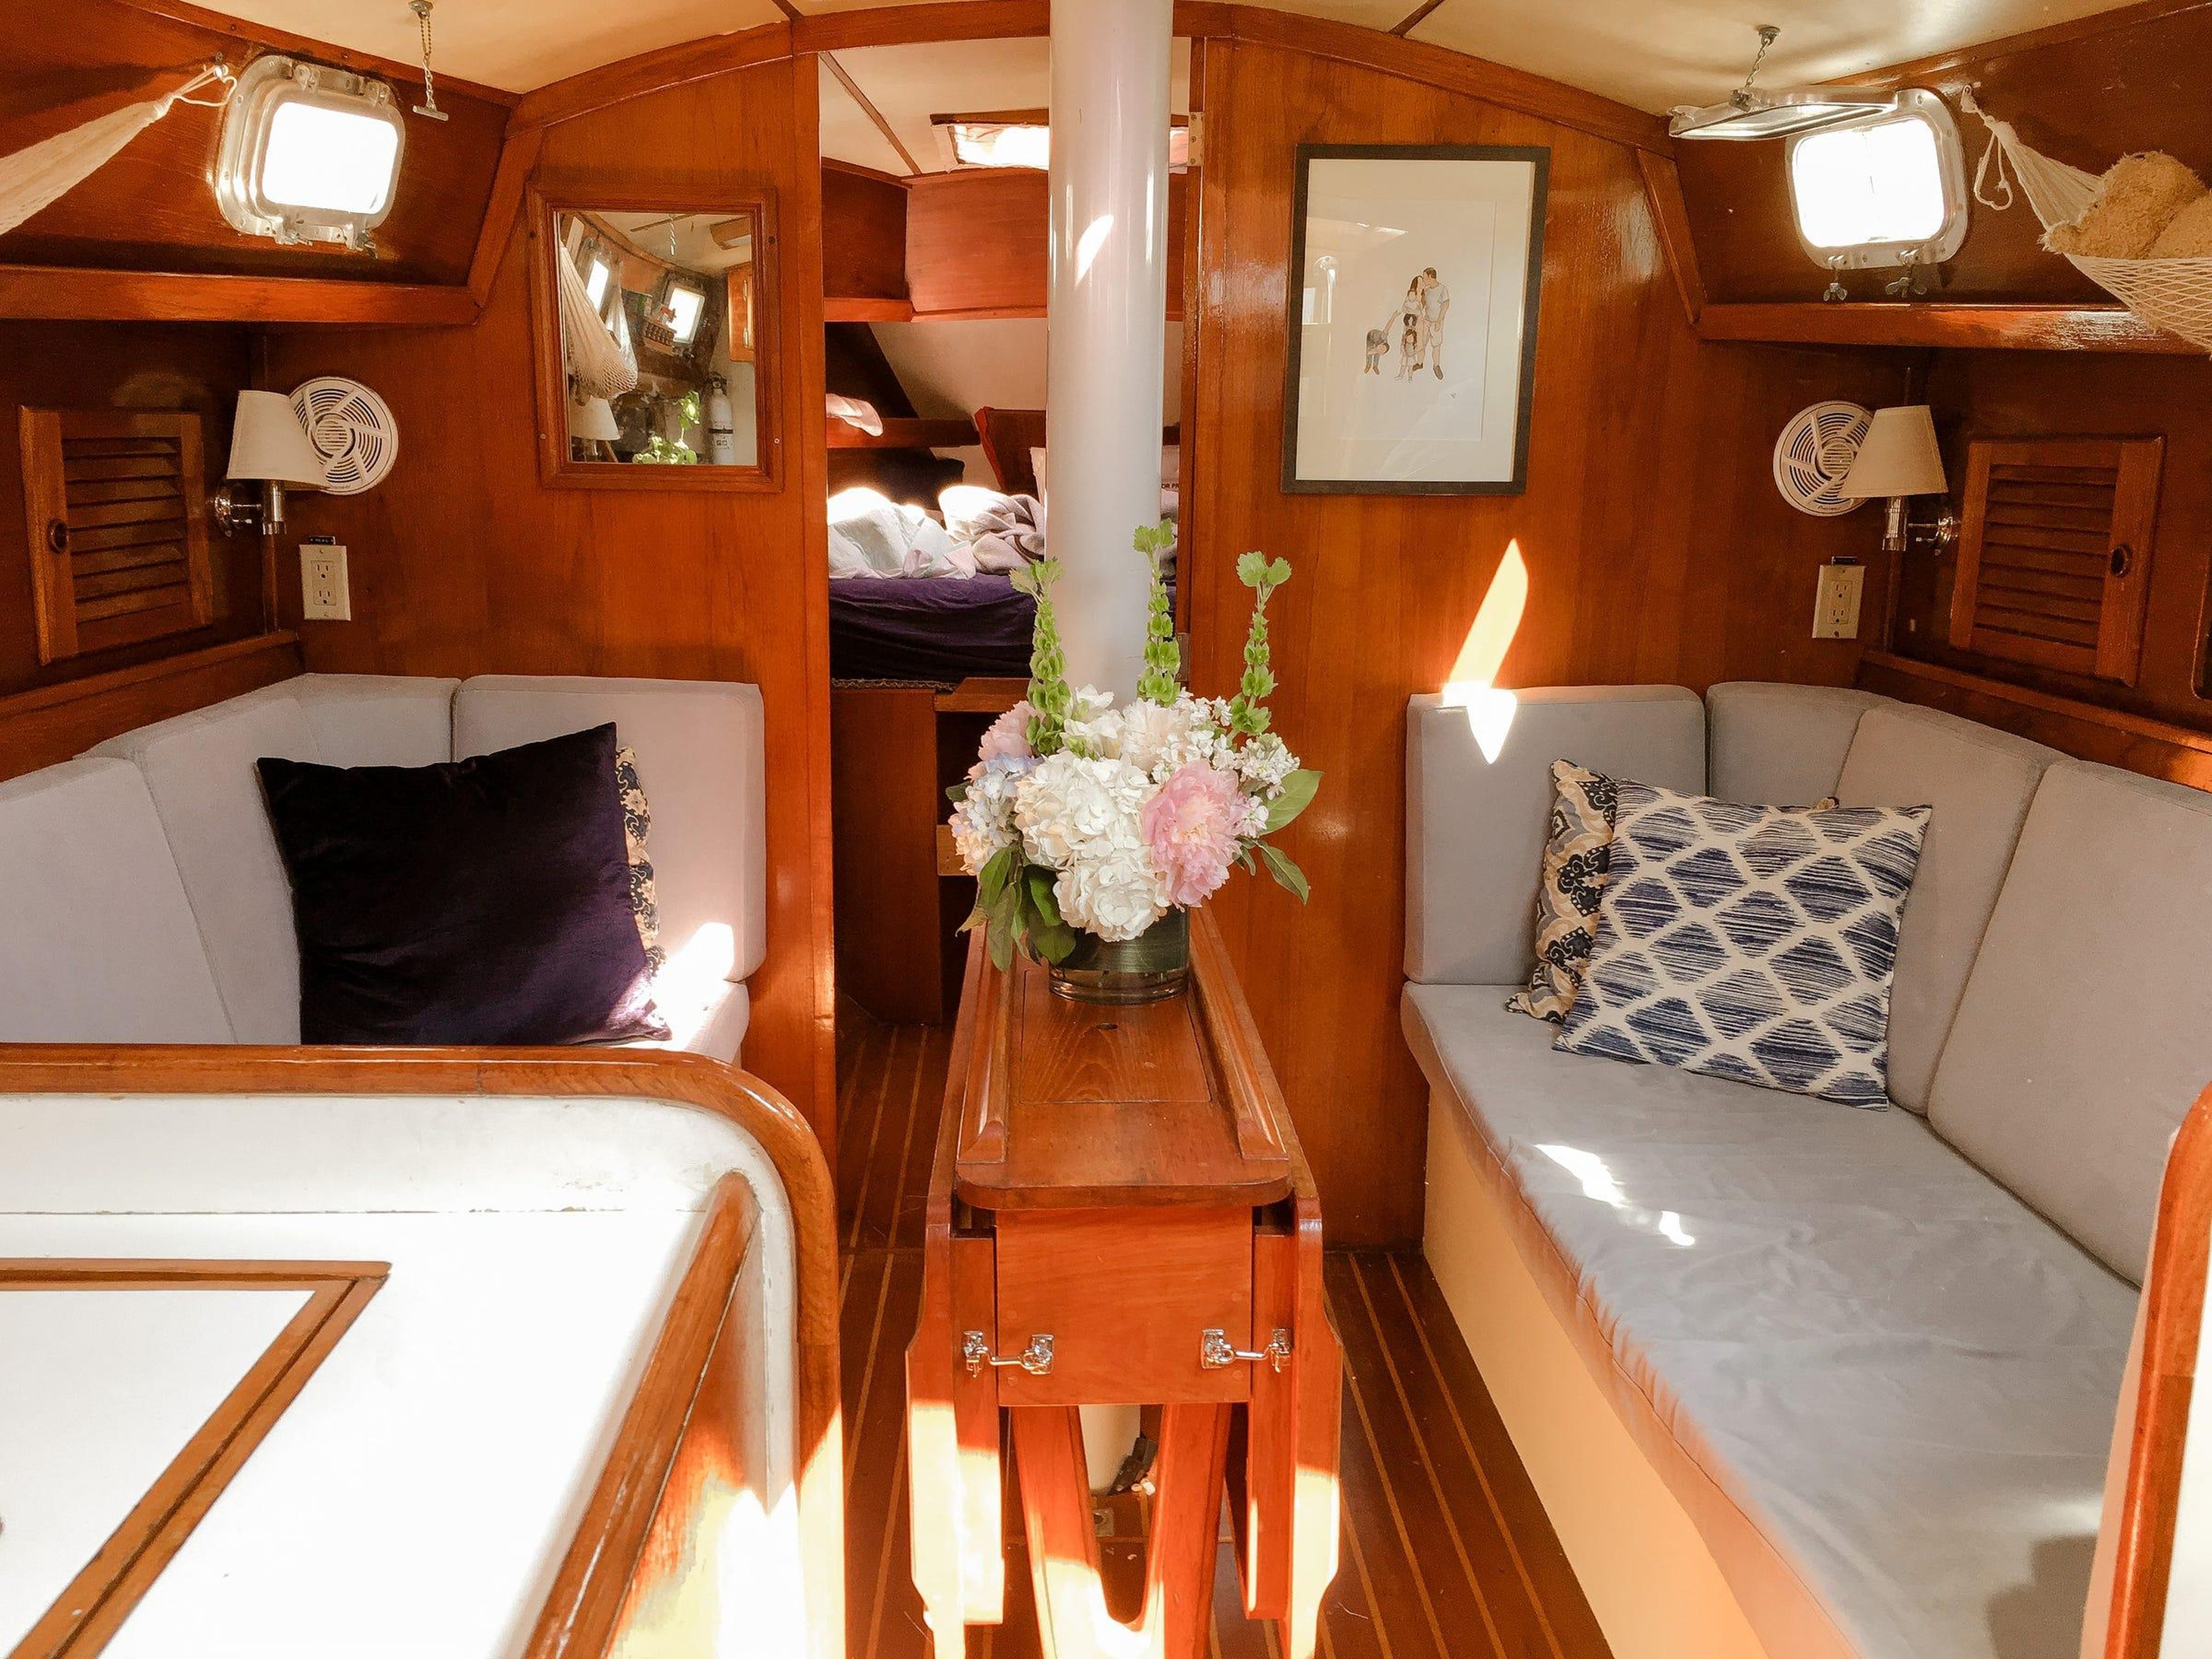 El velero que compraron tiene 2 dormitorios, un baño, una cocina y 2 sofás alrededor de una mesa.